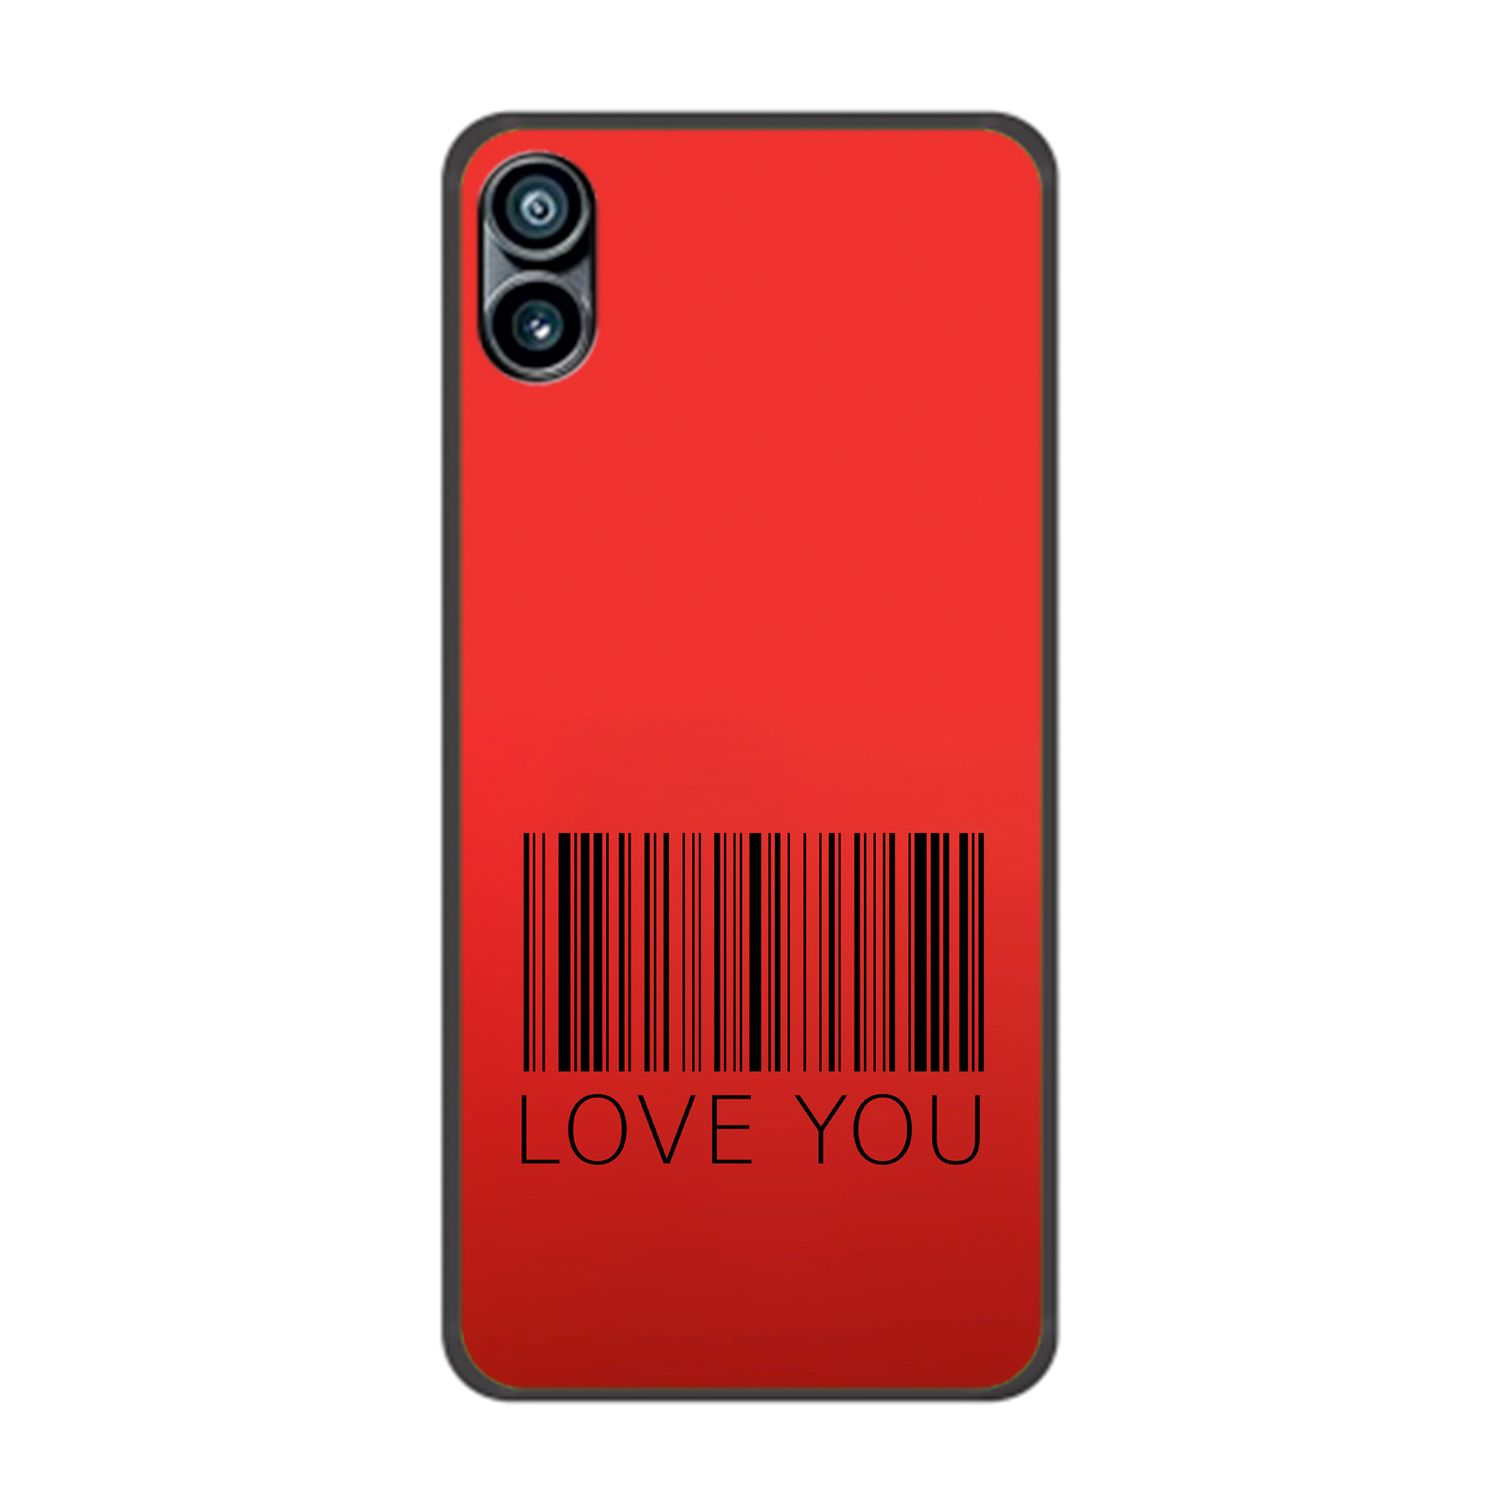 KÖNIG DESIGN Phone Backcover, You 1, Case, Nothing, Love